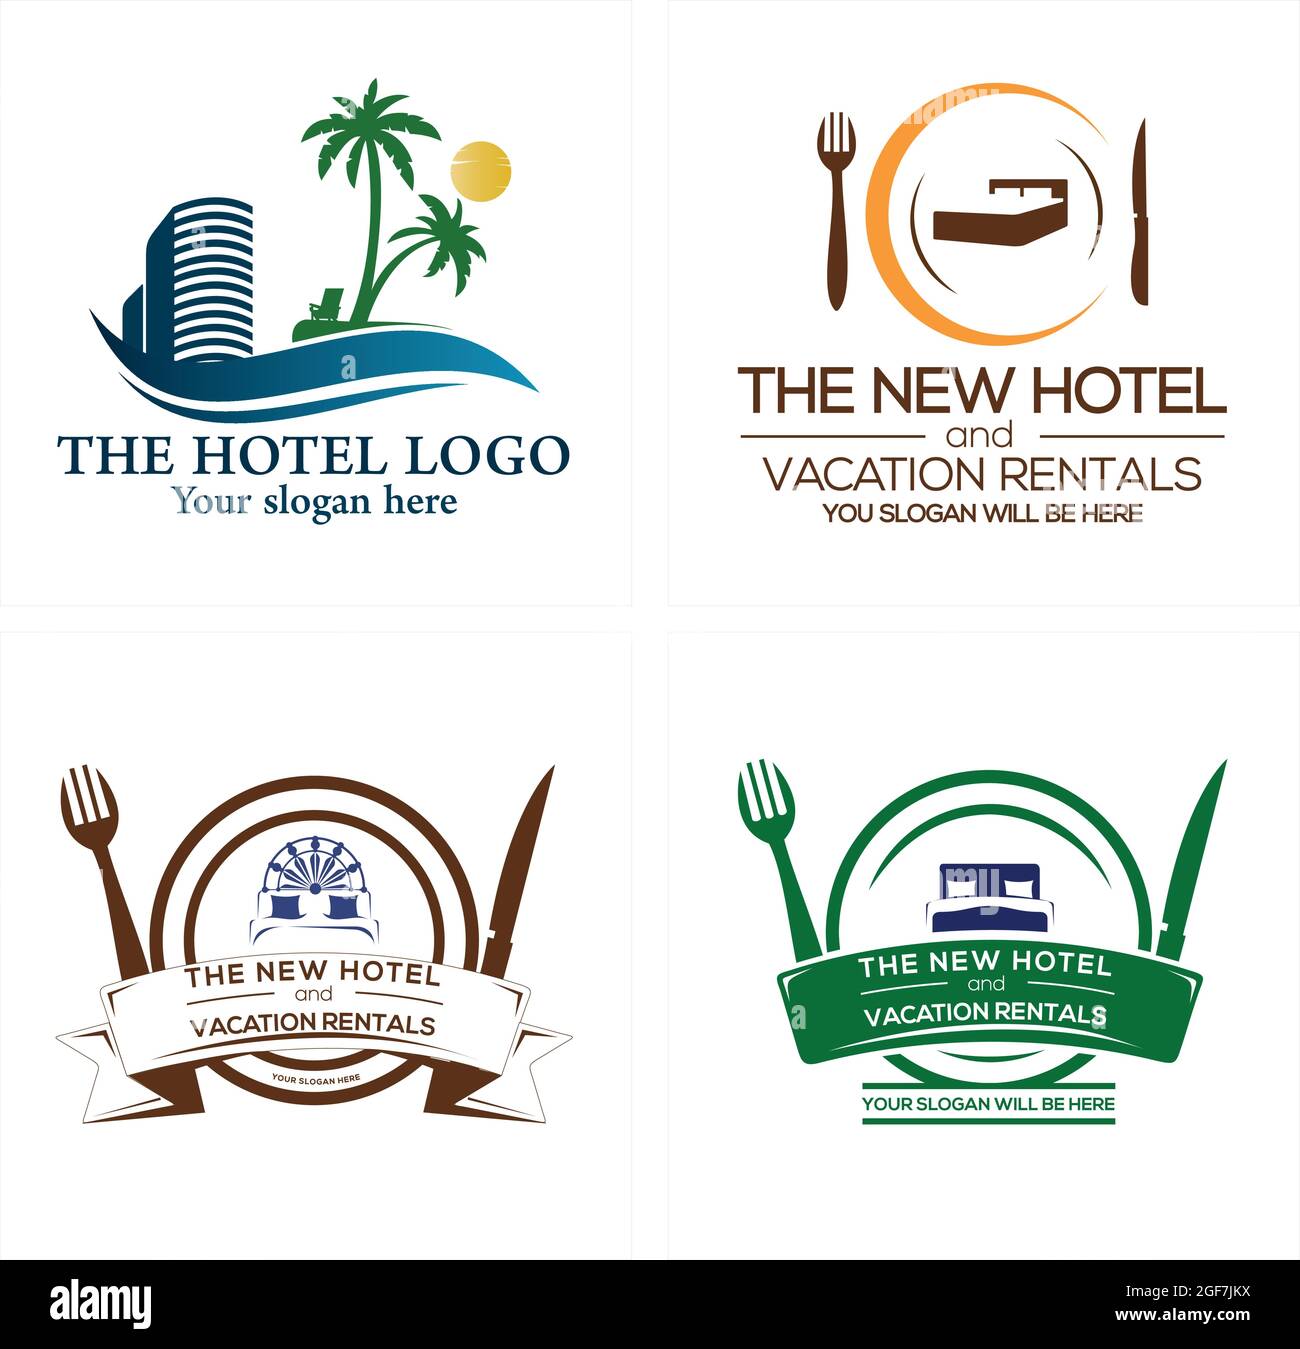 Travel hotel holiday restaurant resort logo design Stock Vector ...